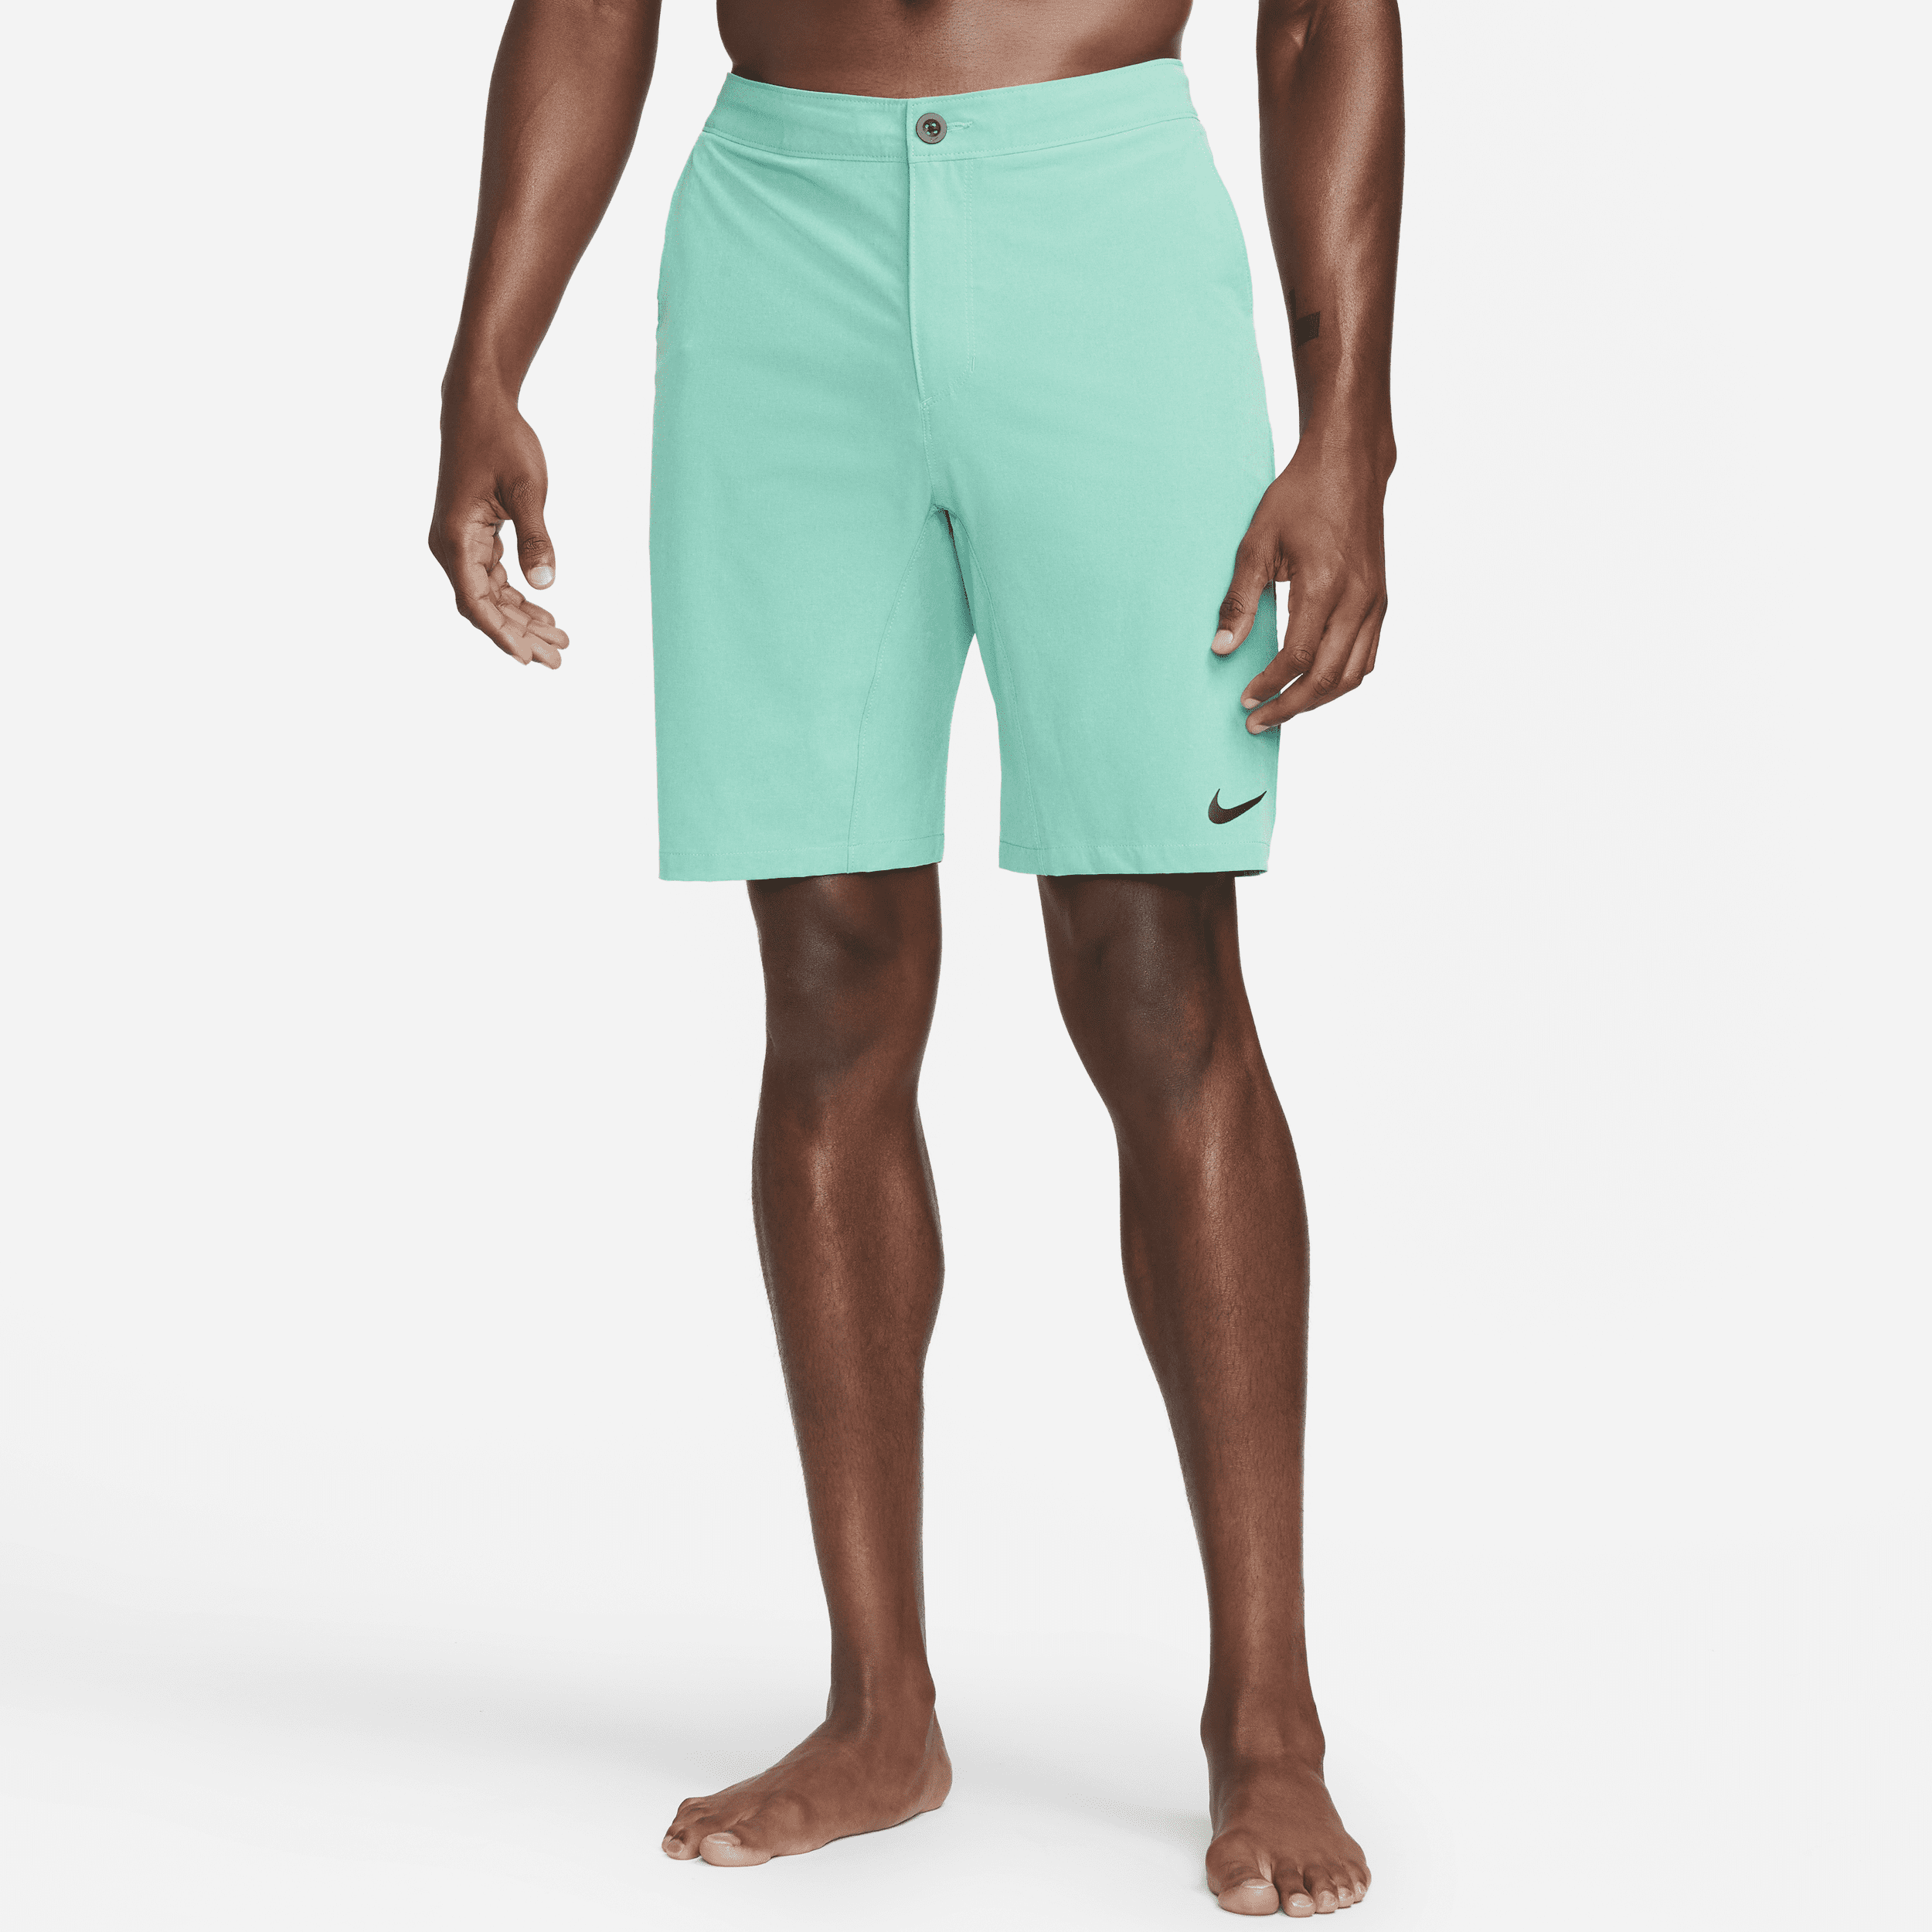 Shorts ibridi da mare 23 cm Nike Flow – Uomo - Verde